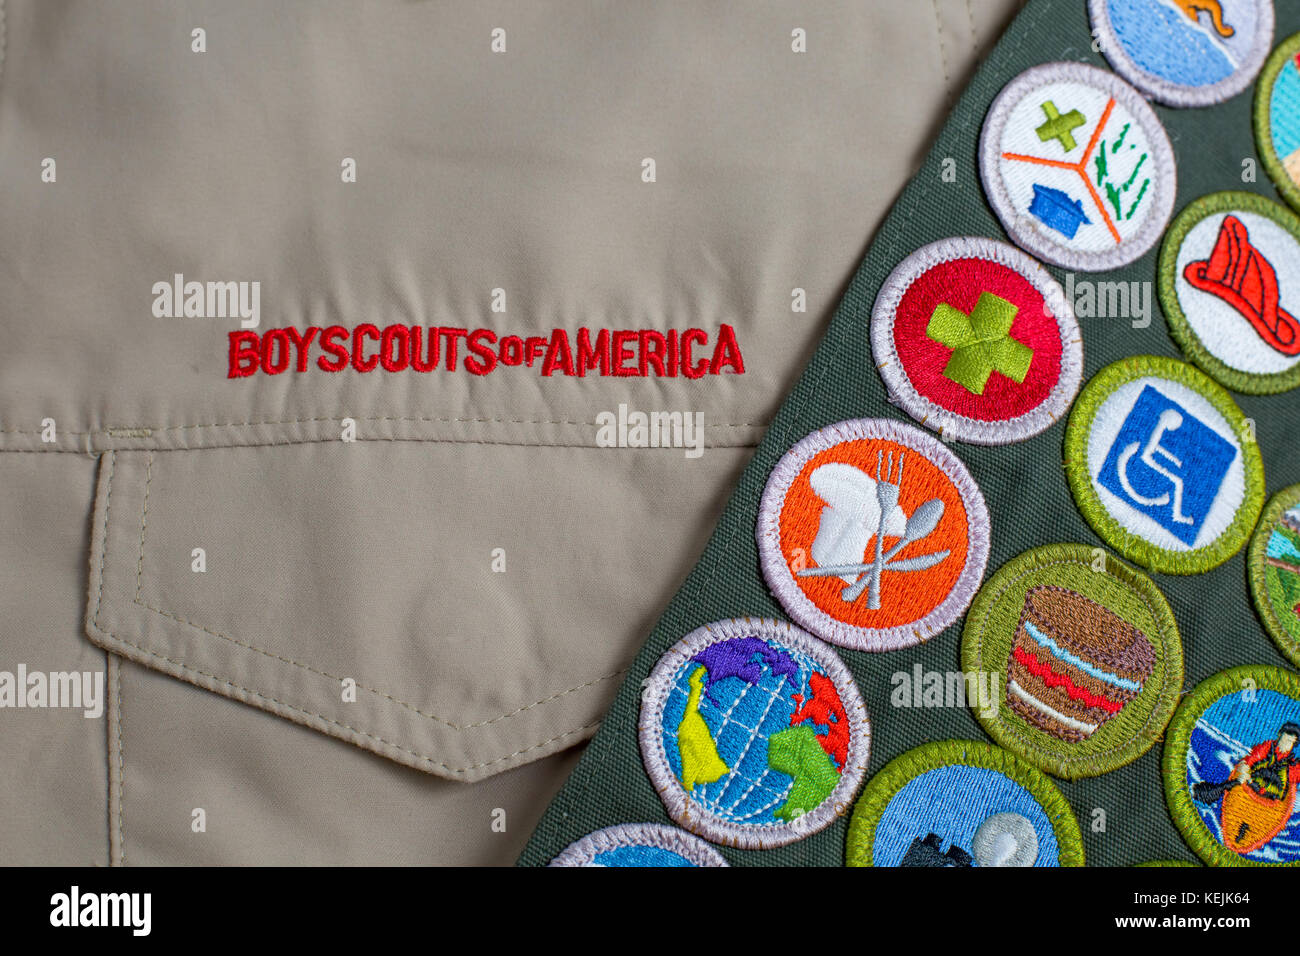 SAINT LOUIS, USA - 16. OKTOBER 2017: Boy Scouts of America (BSA) Einheitliche t-shirt und Merit badge Schärpe Stockfoto